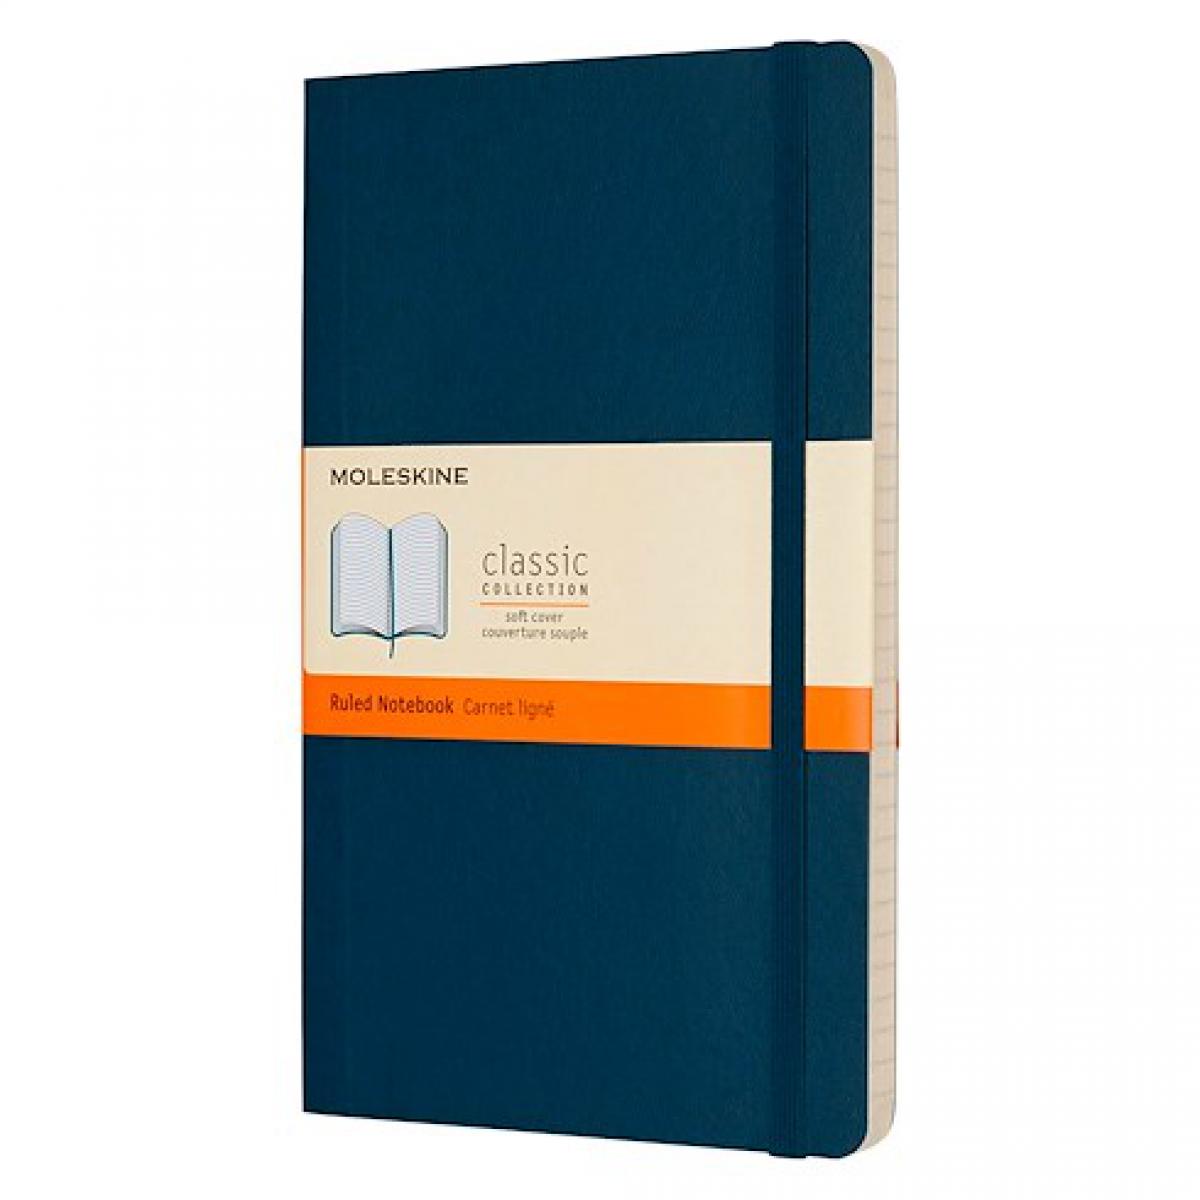 Moleskine - Carnet Moleskine souple bleu saphir 13 x 21 cm ivoire ligné 192 pages - Accessoires Bureau